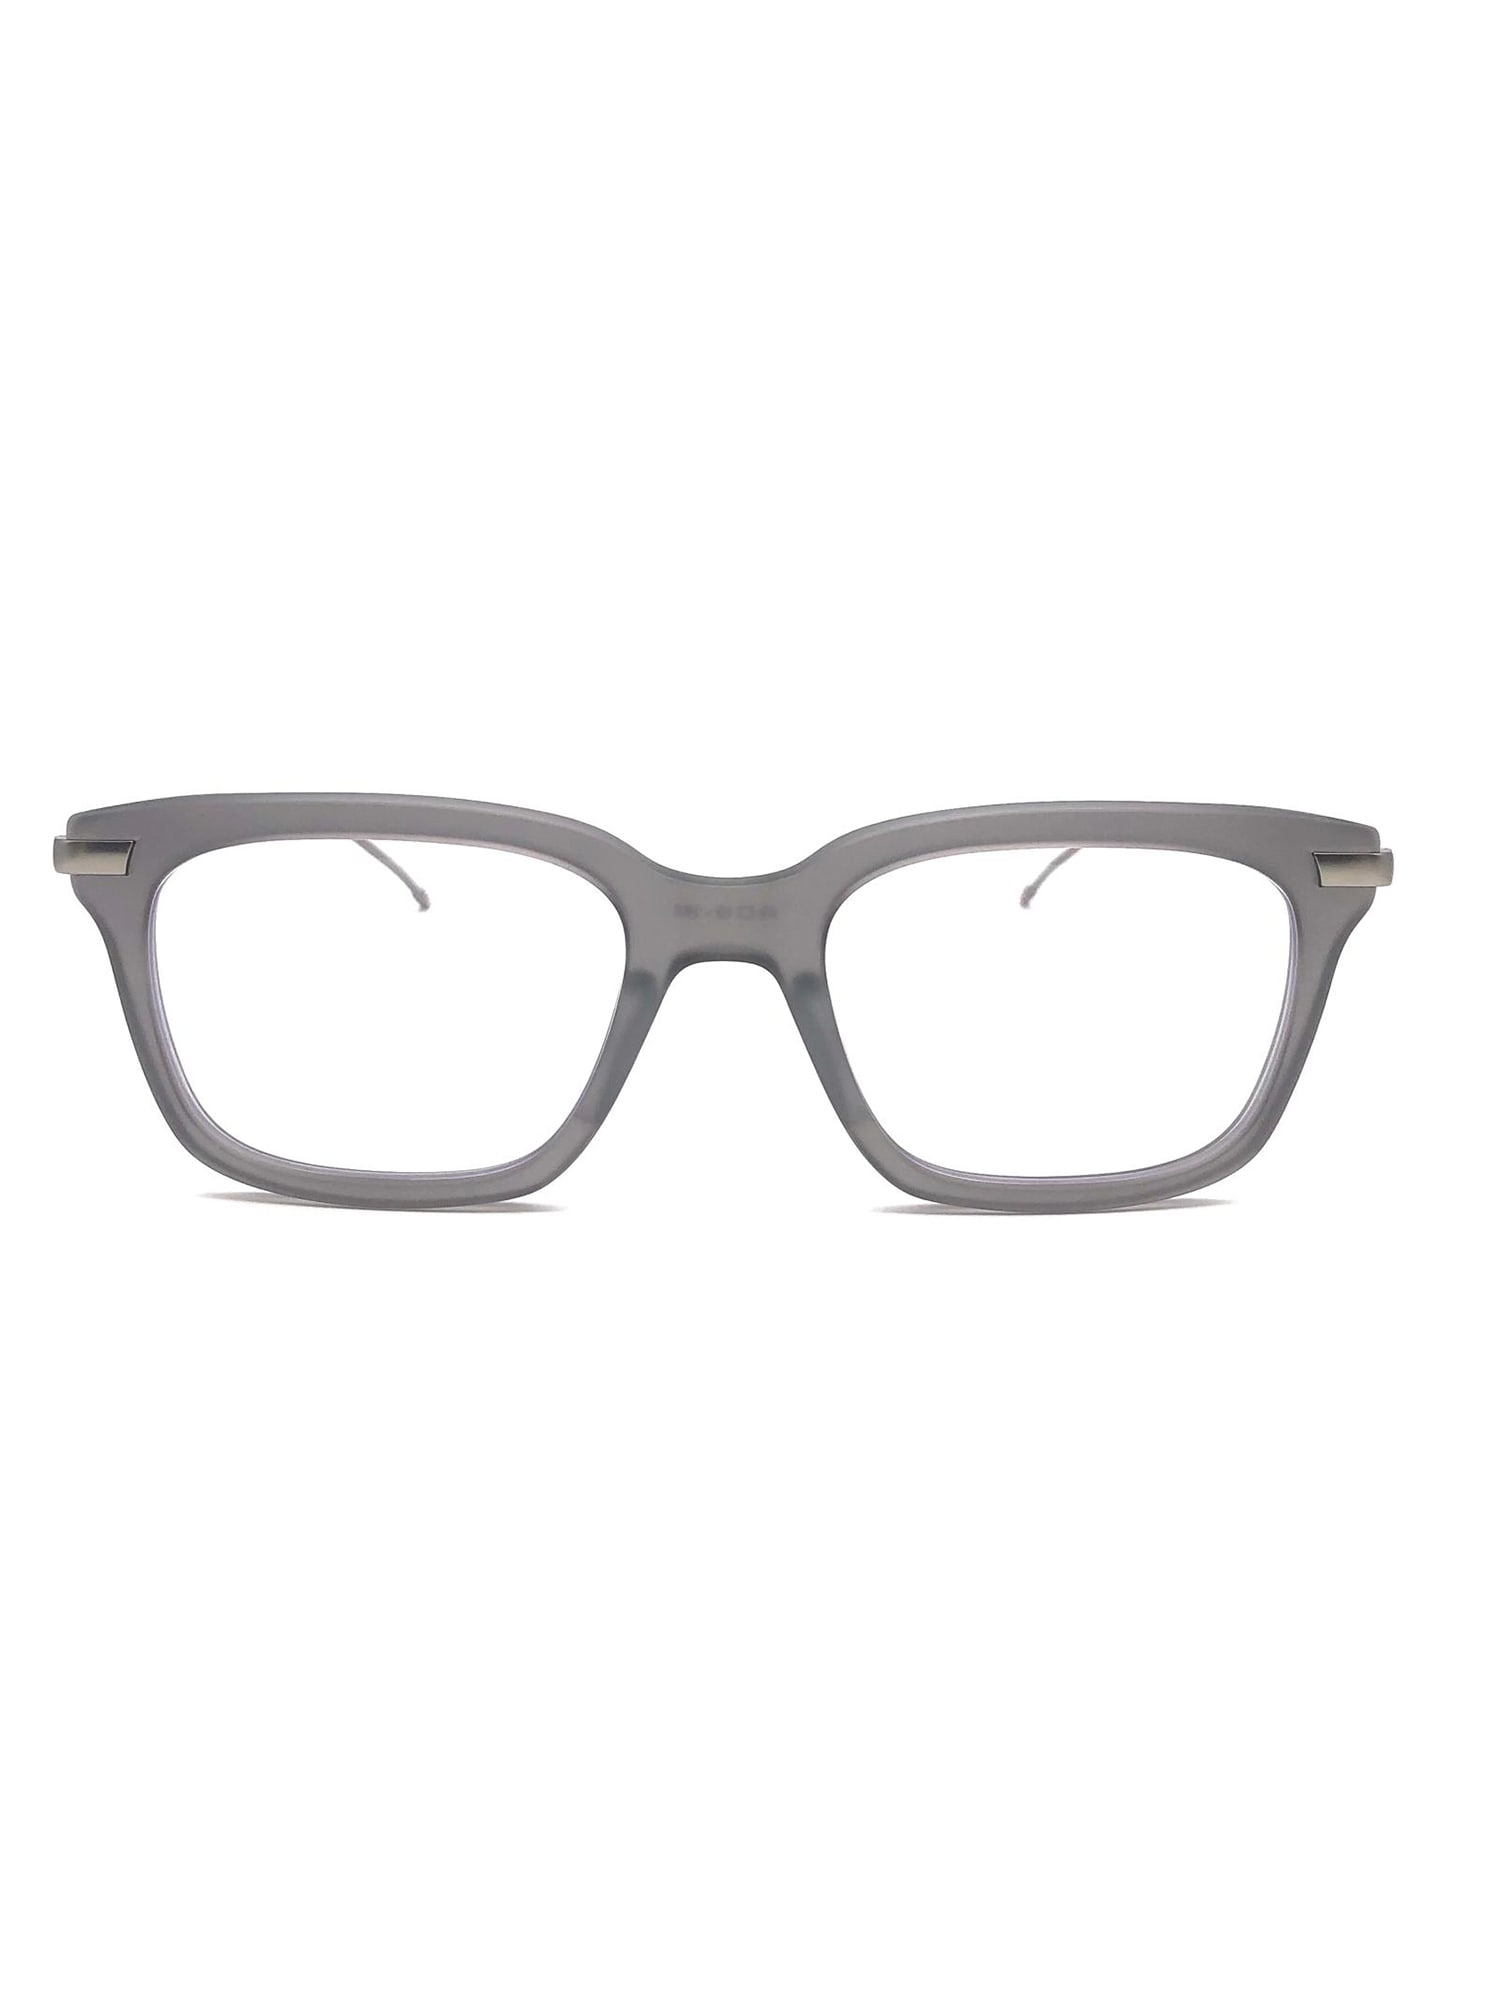 Thom Browne Ueo701a/g0003 Eyewear In Gray